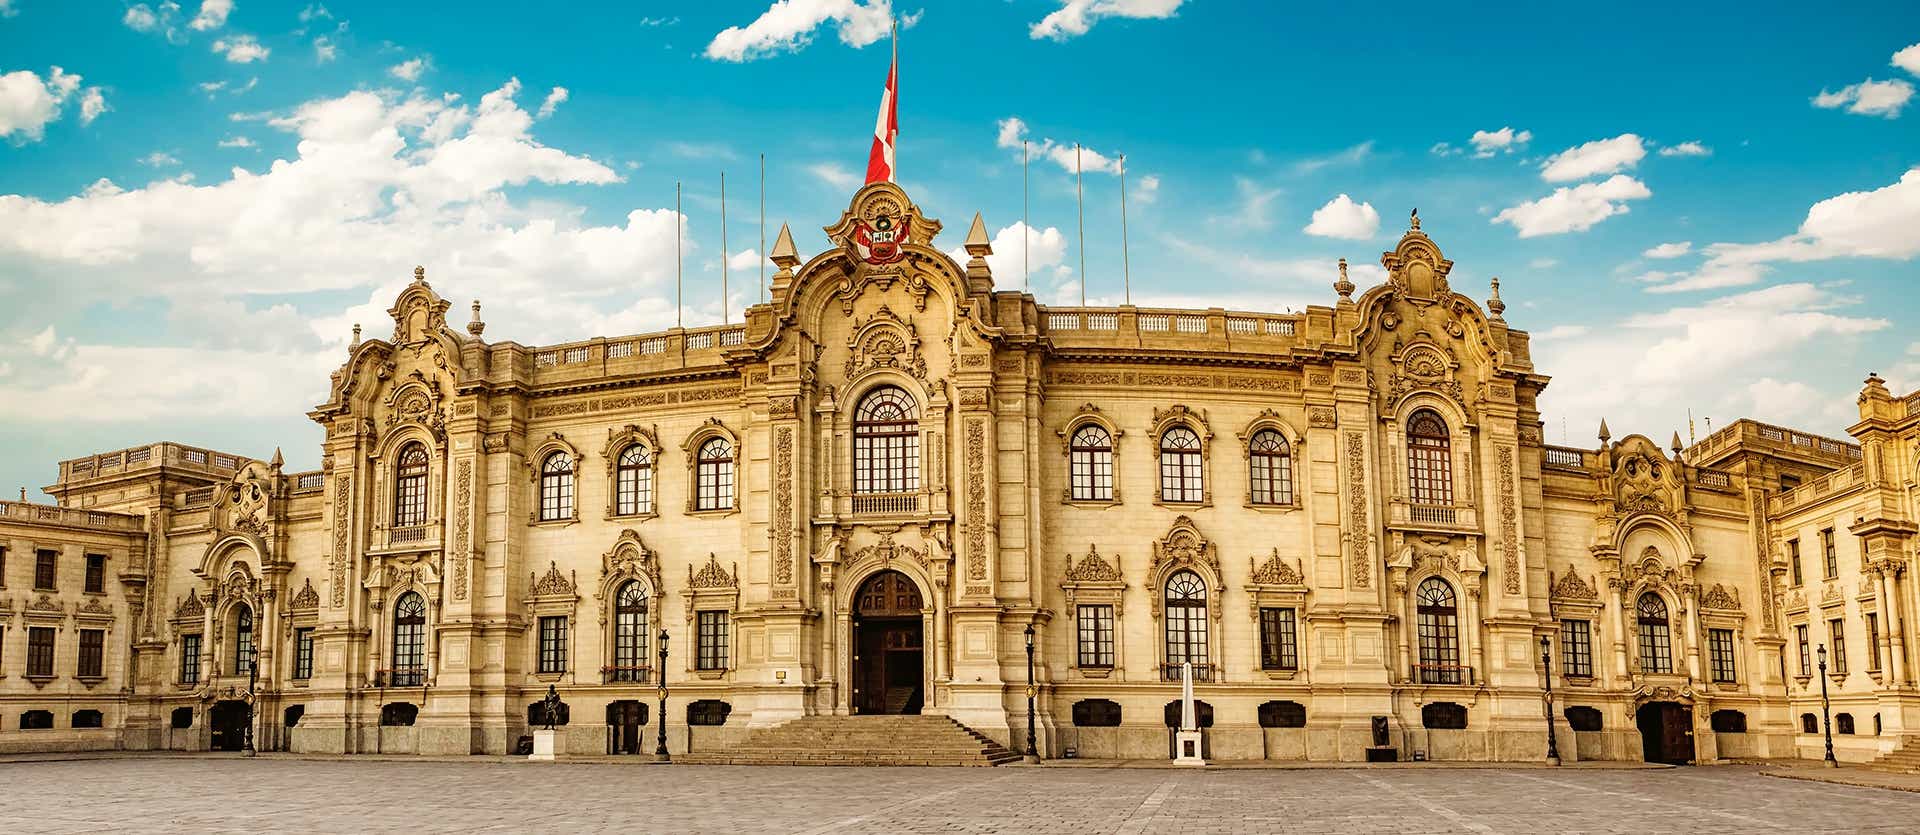 Palacio del Gobierno <span class="iconos separador"></span> Lima